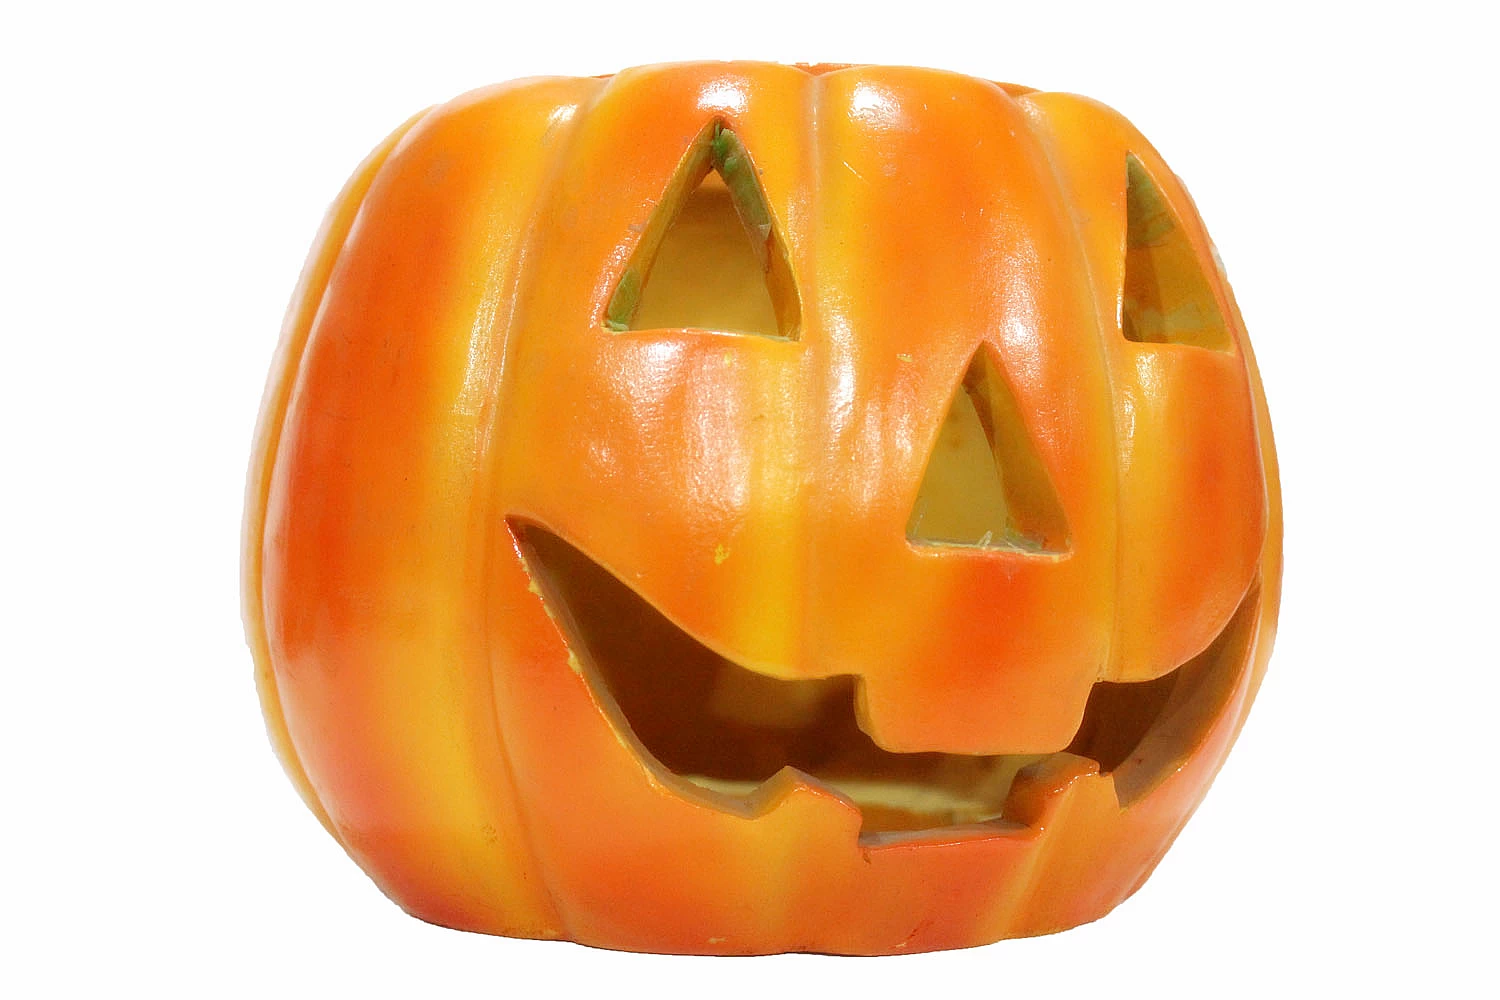 high quality polyurethane pumpkins, foam pumpkins,PU toy,PU halloween pumpkin,artificial carvable pumpkins